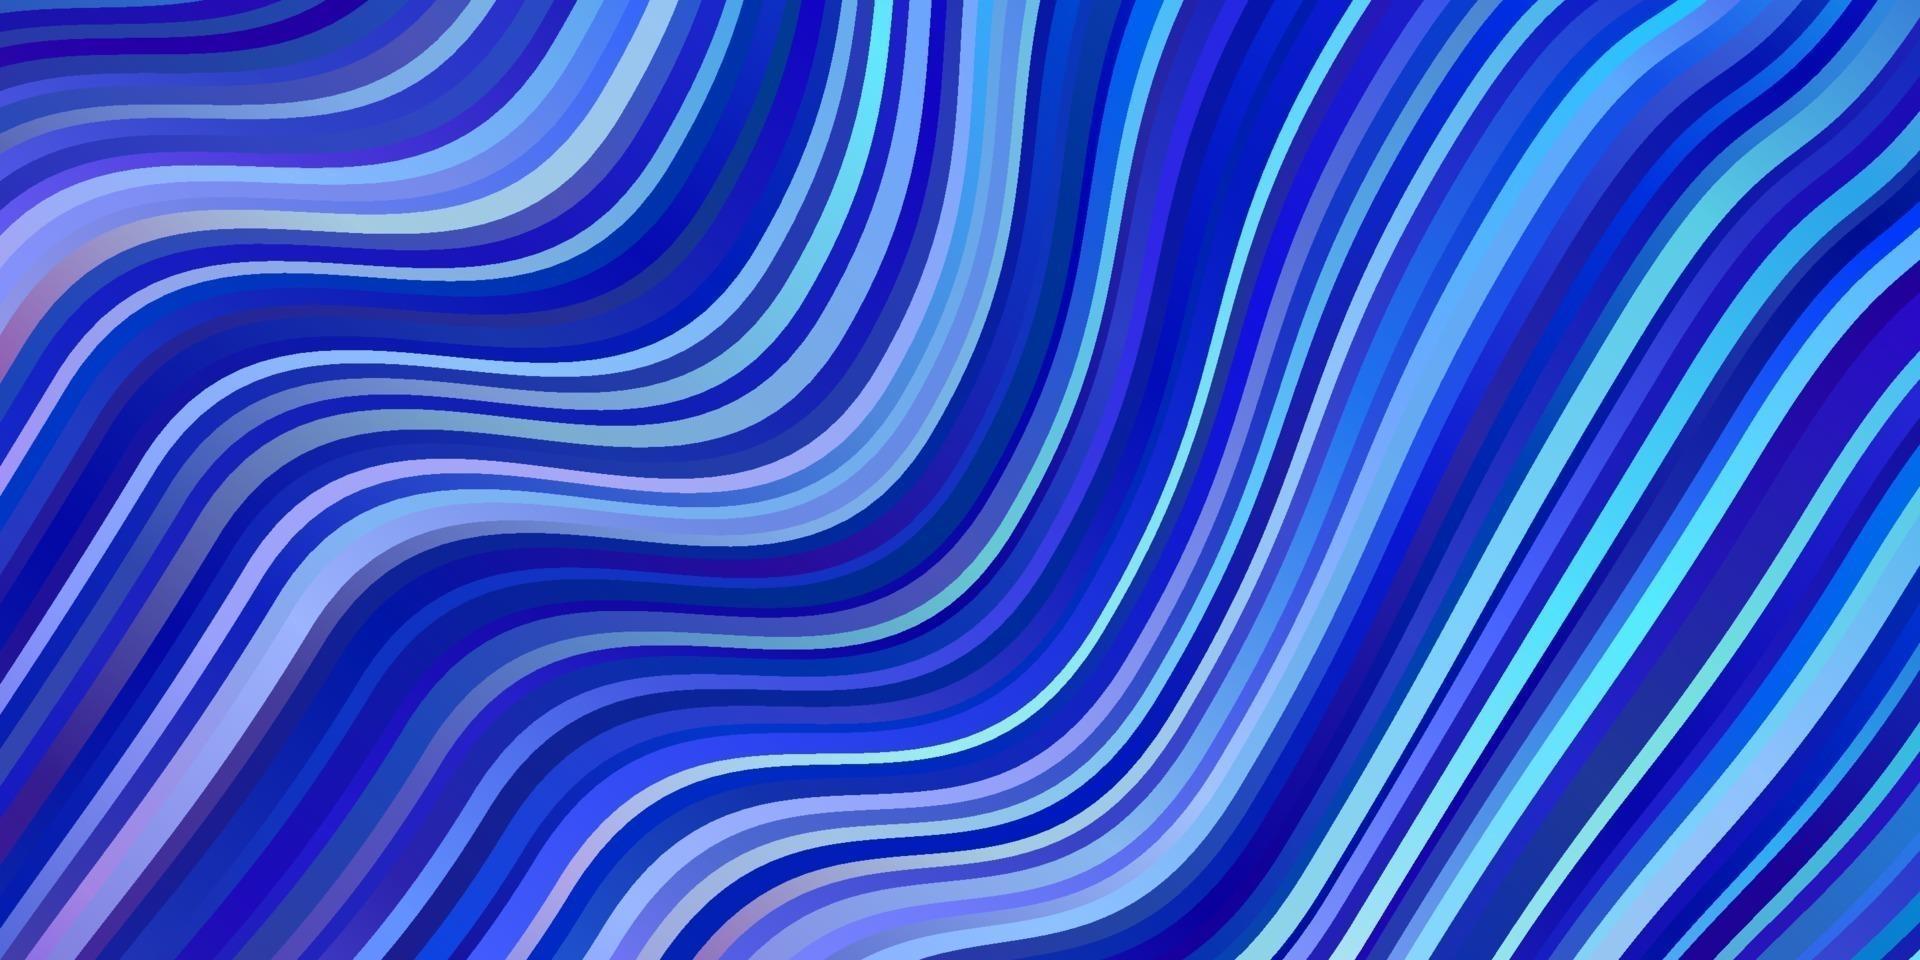 lichtroze, blauw vector sjabloon met curven.